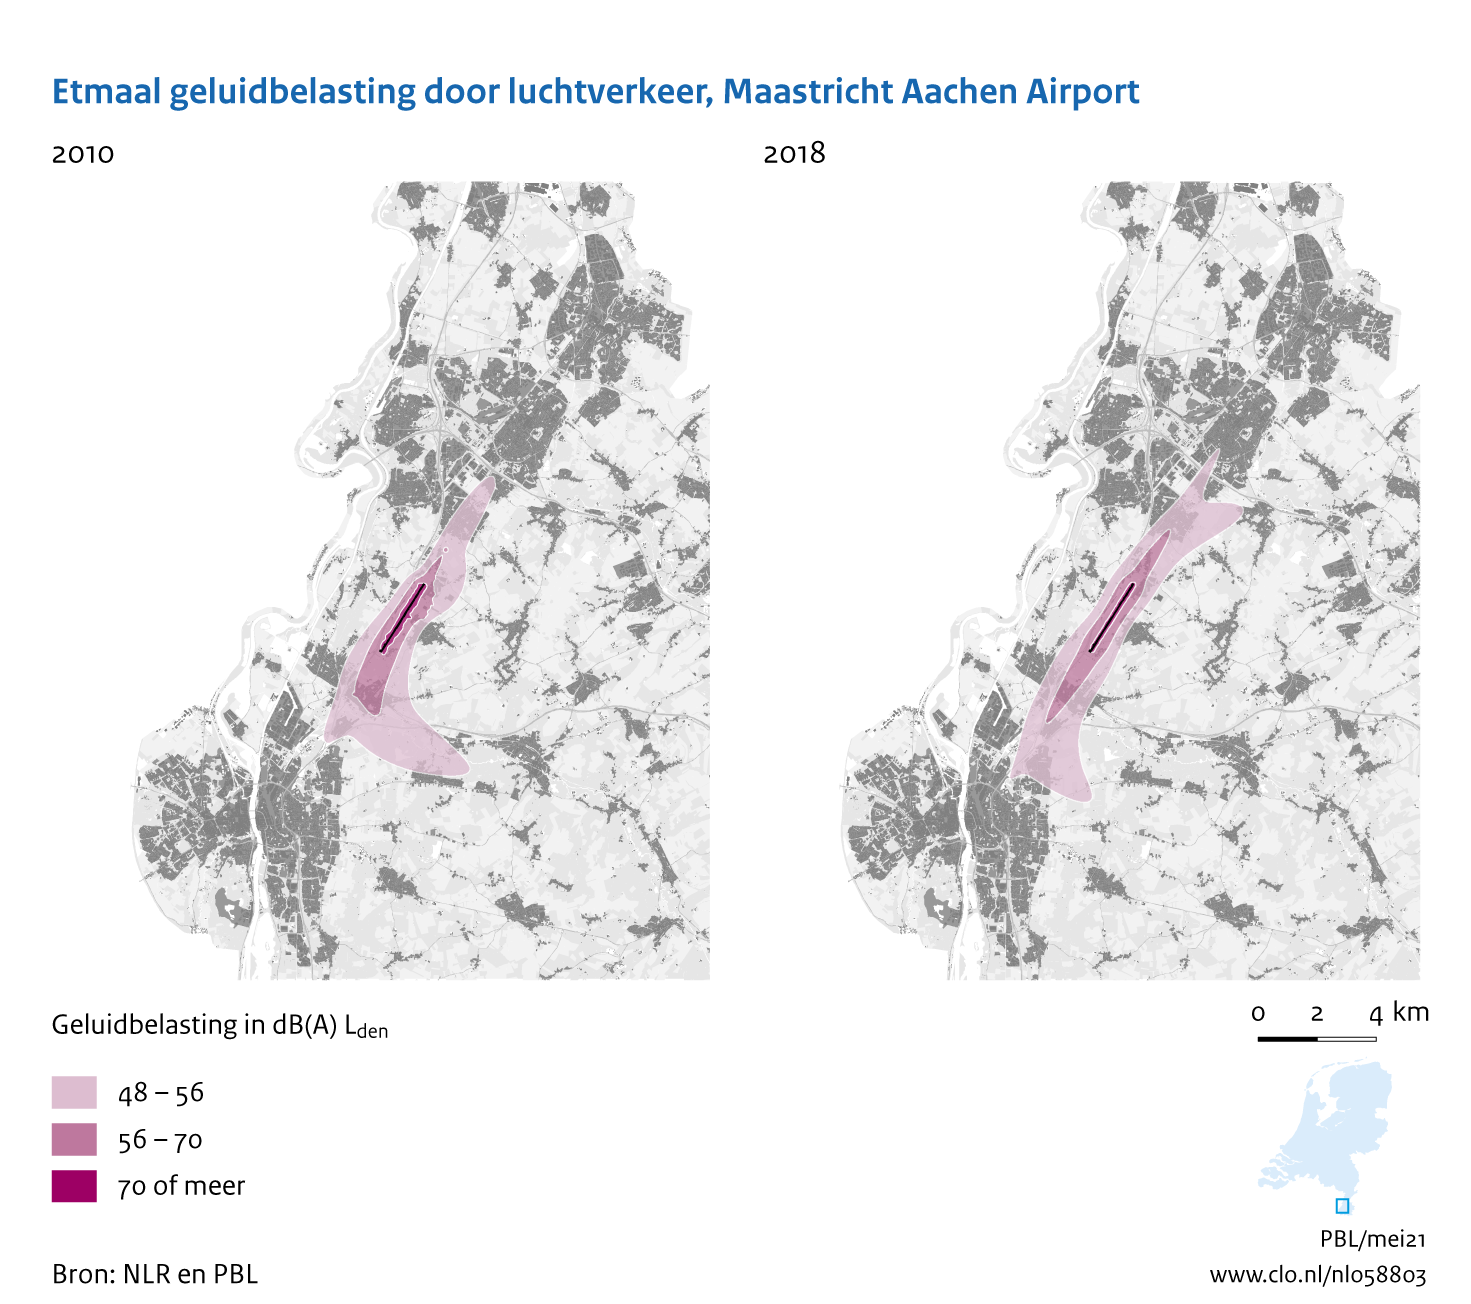 Figuur Etmaal geluidbelasting door luchtvaart, Maastricht Aachen Airport, 2010-2018. In de rest van de tekst wordt deze figuur uitgebreider uitgelegd.